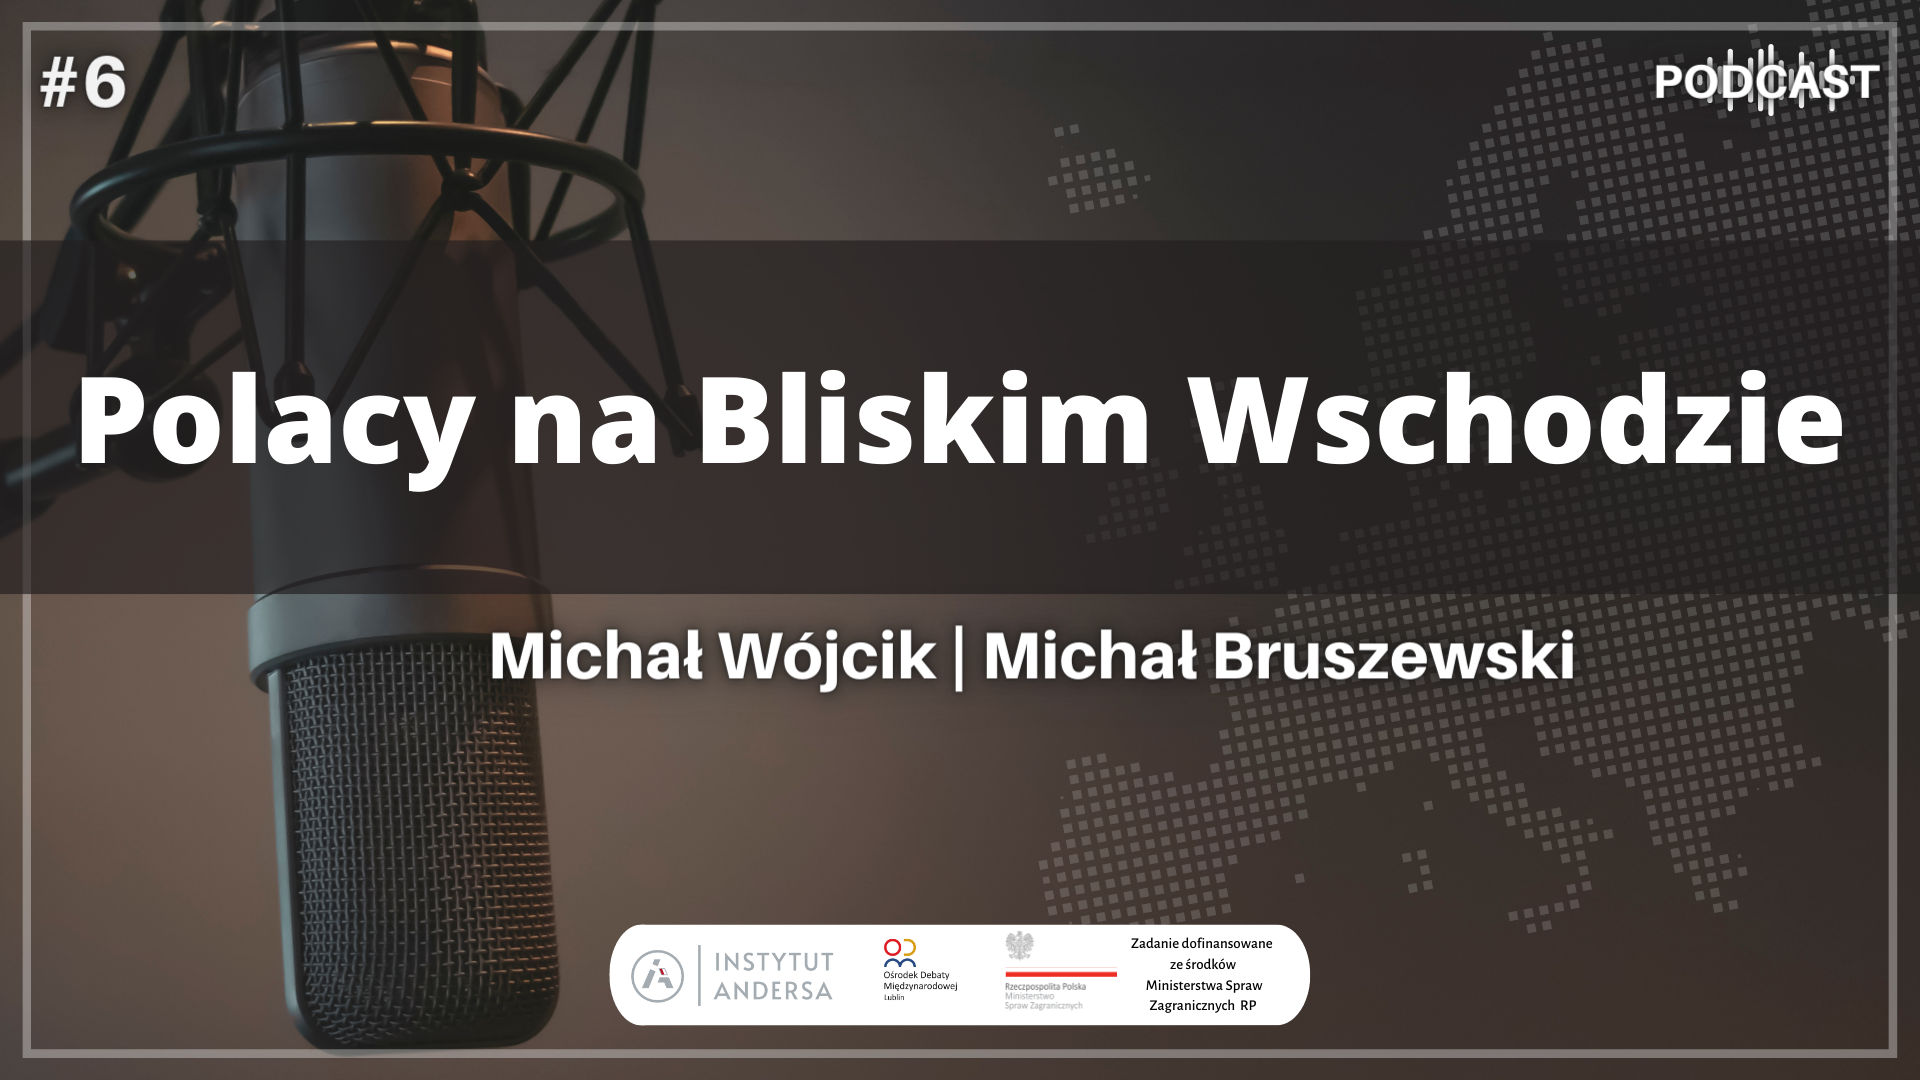 Podcast: Polacy na Bliskim Wschodzie